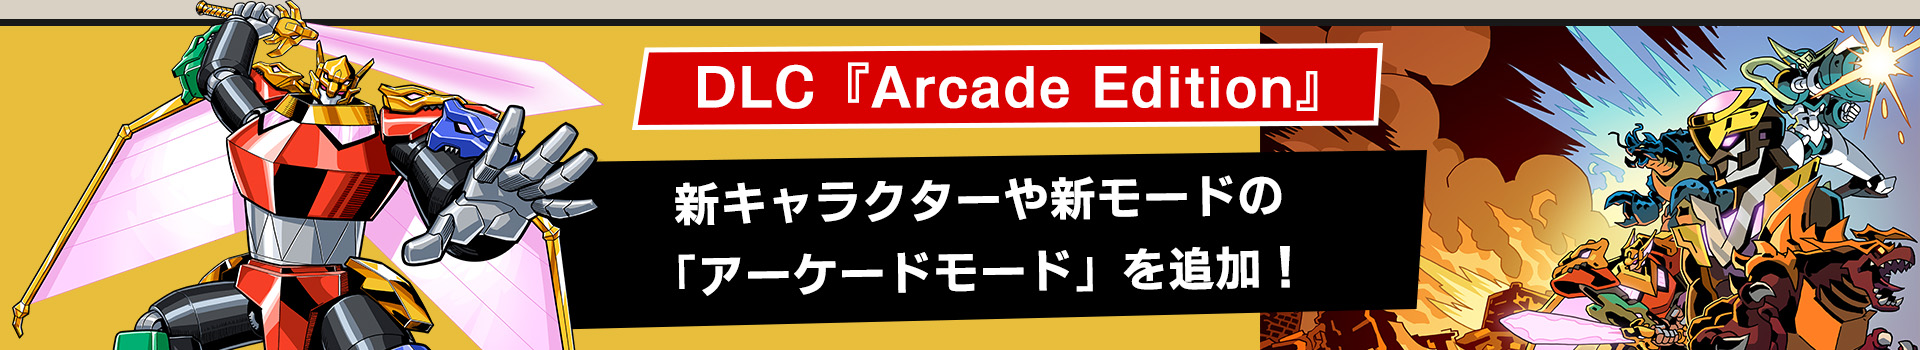 新キャラクターと新モードを追加するDLC「Dawn of the Monsters: Arcade Edition」登場